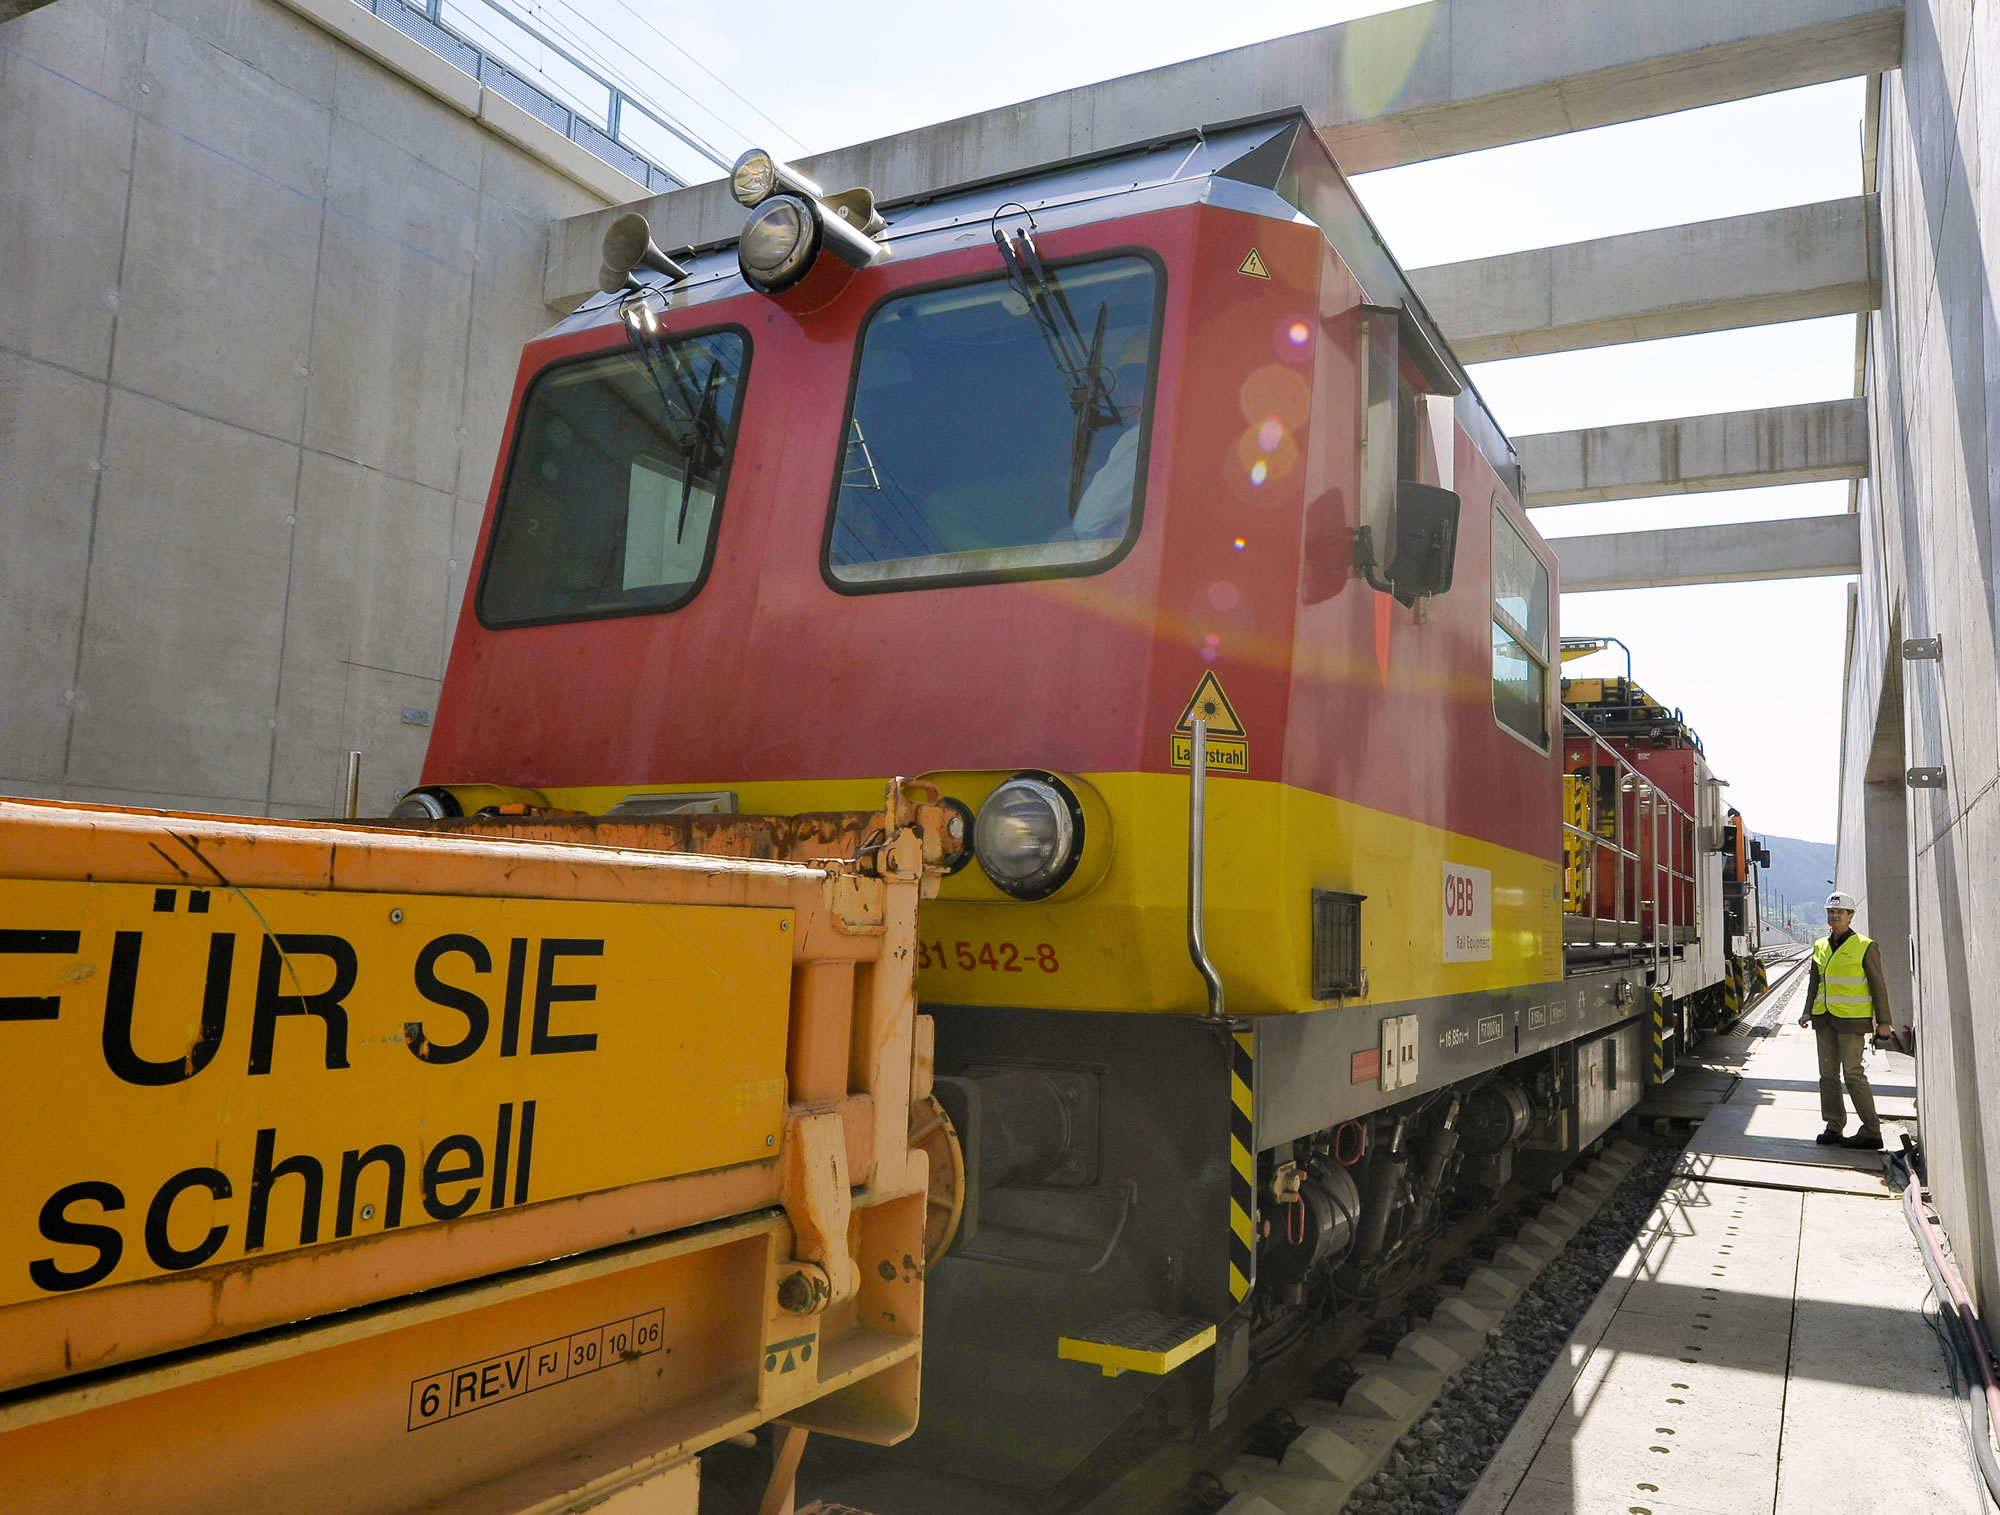 Uma locomotiva em grande plano e um trabalhador da construção, vestido com equipamento de segurança, no lado direito da plataforma, a supervisionar a locomotiva.